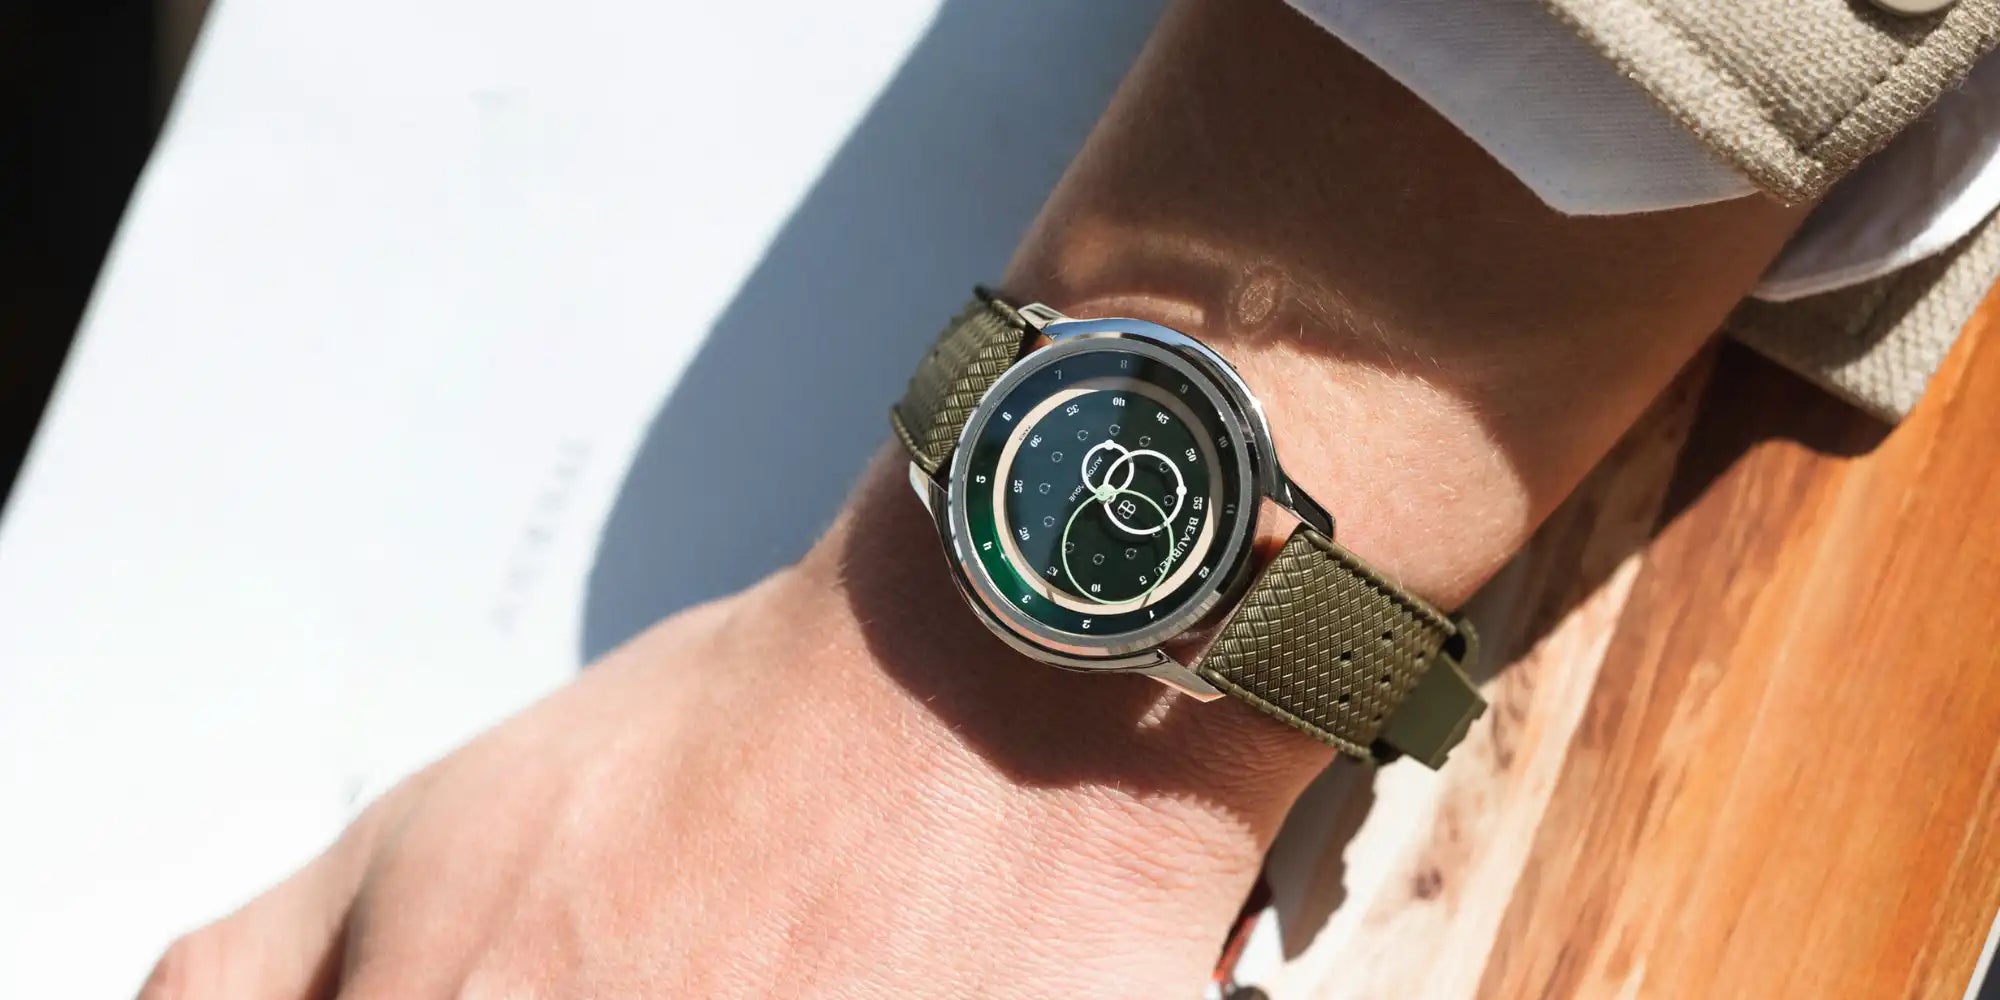 Montre GMT Verte avec un bracelet Tropic khaki portée au poignet d'un homme